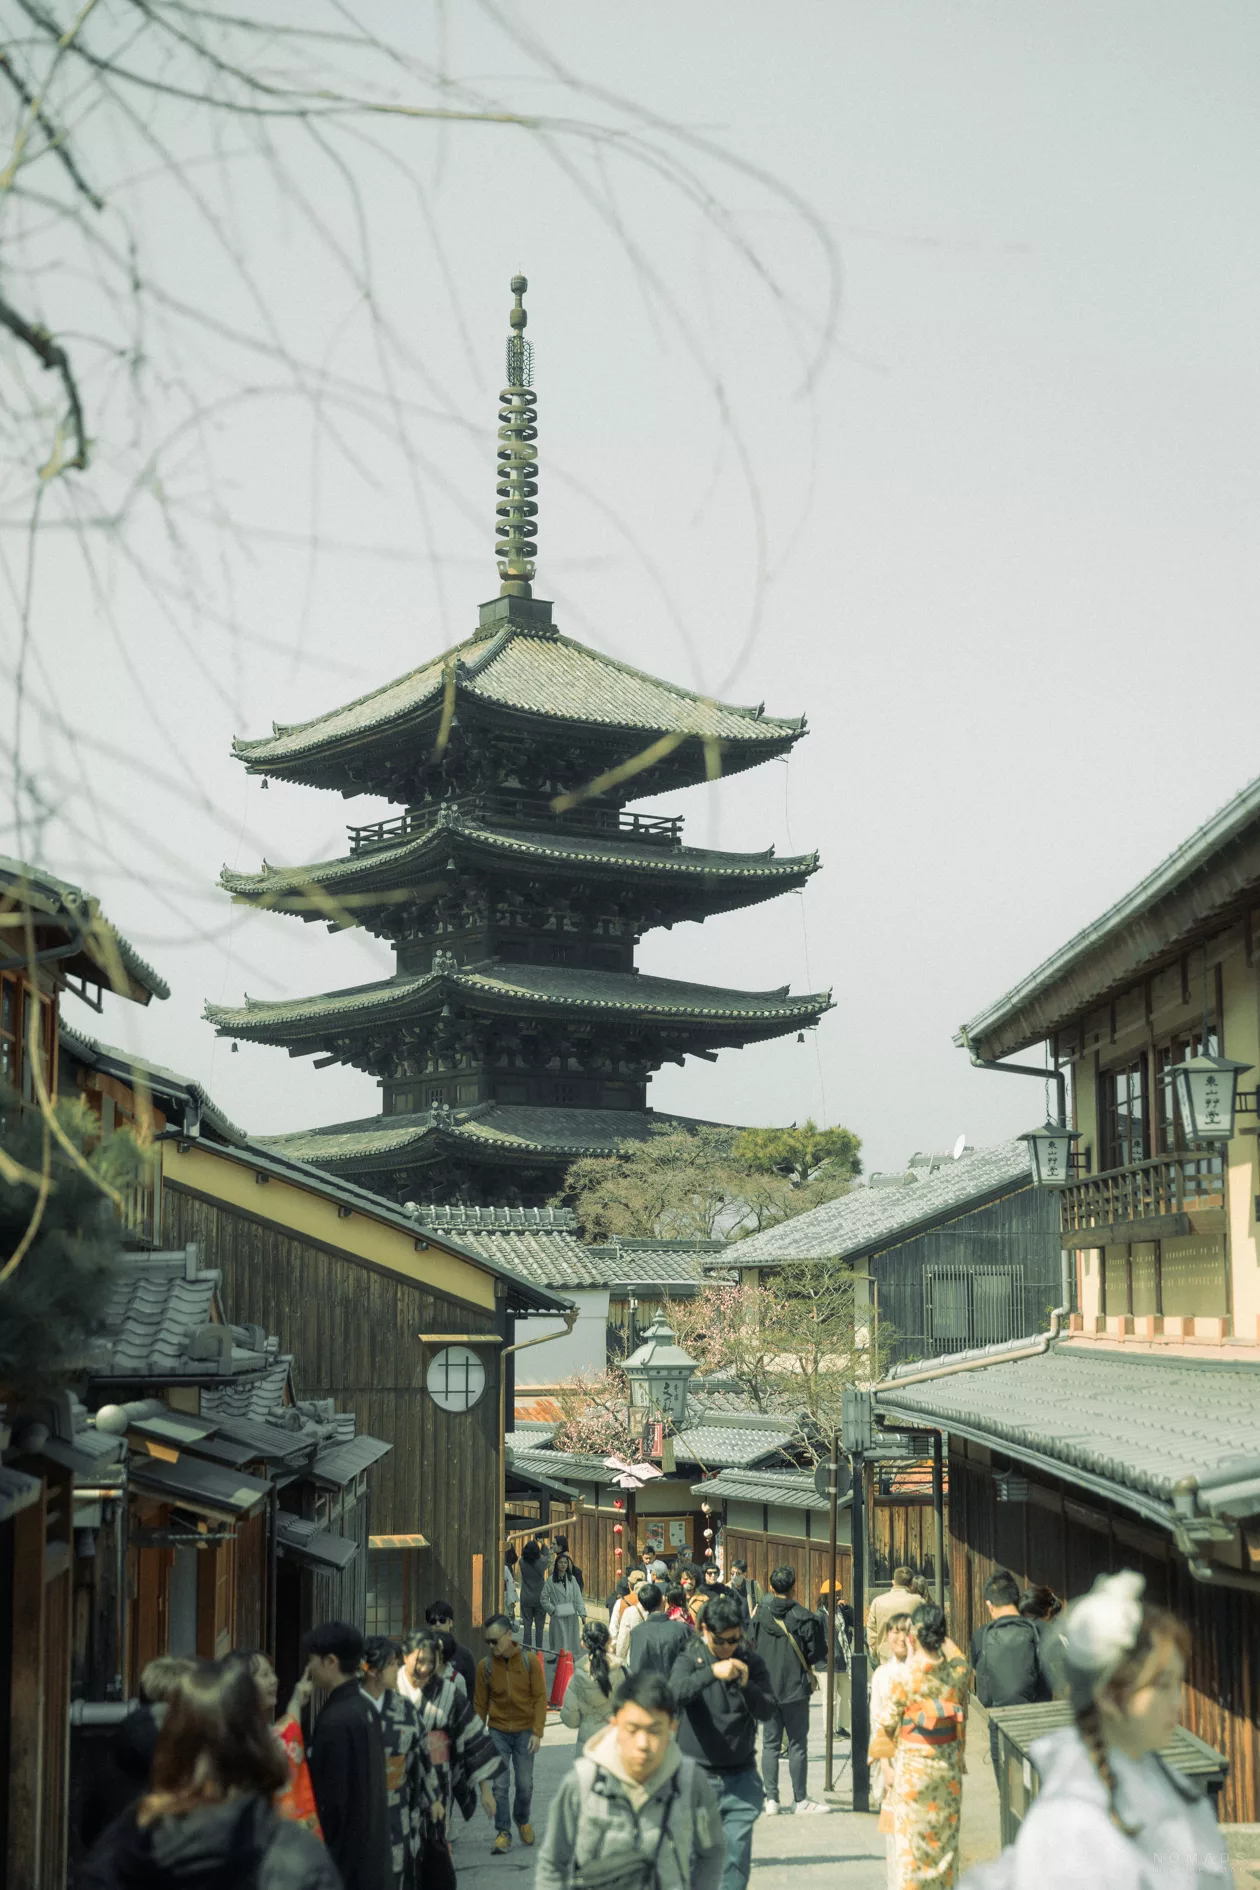 Blick in durch die Gassen des Gion Viertels in Kyoto auf den Hokan-ji Temple